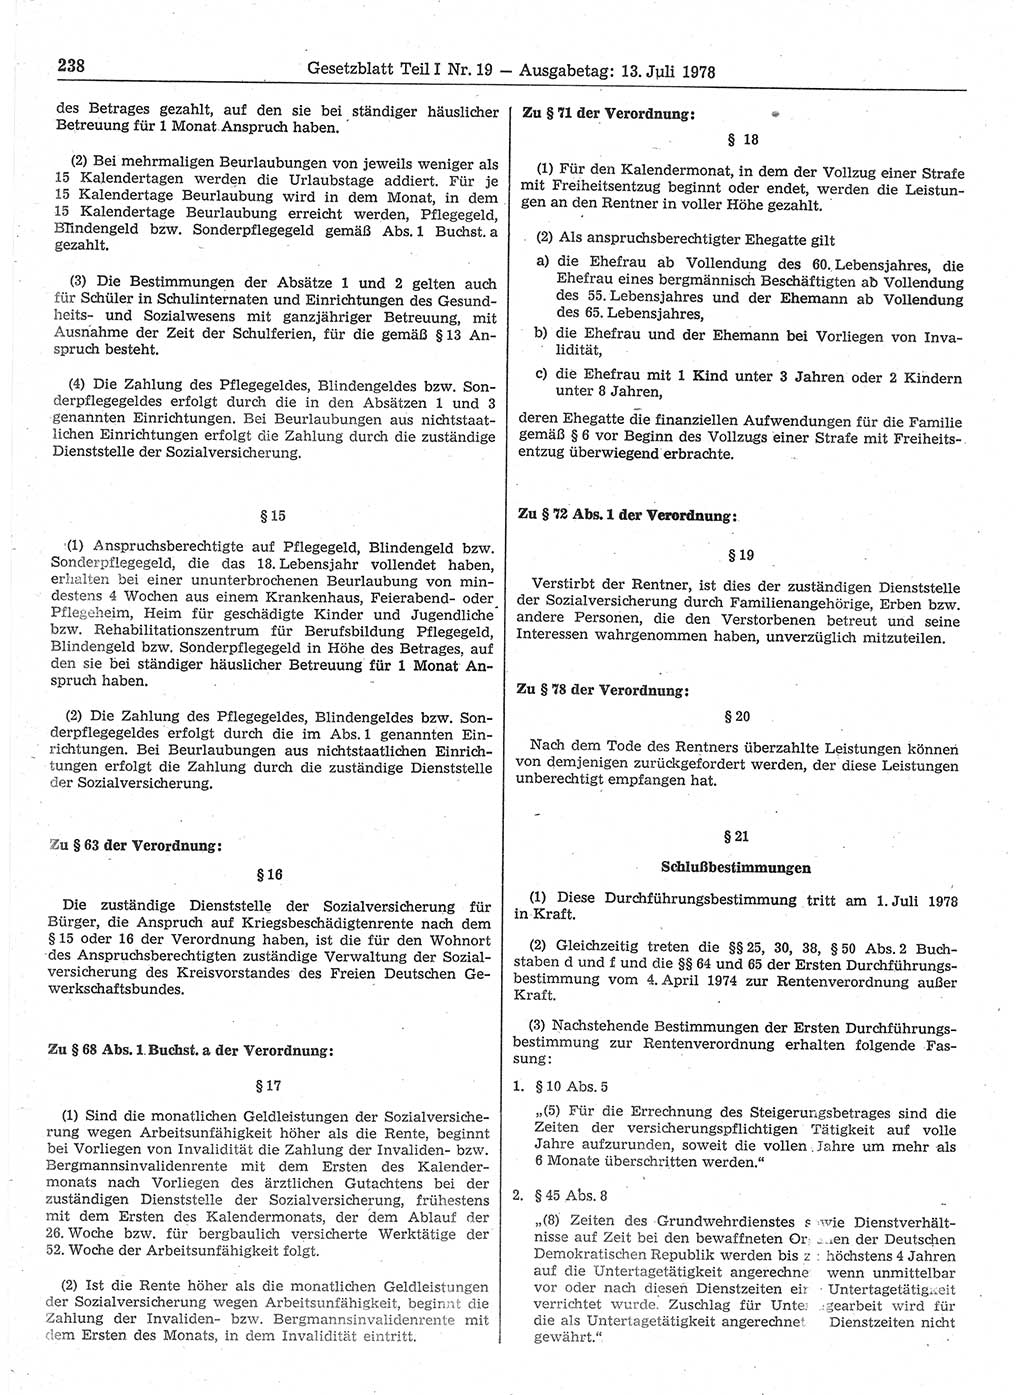 Gesetzblatt (GBl.) der Deutschen Demokratischen Republik (DDR) Teil Ⅰ 1978, Seite 238 (GBl. DDR Ⅰ 1978, S. 238)